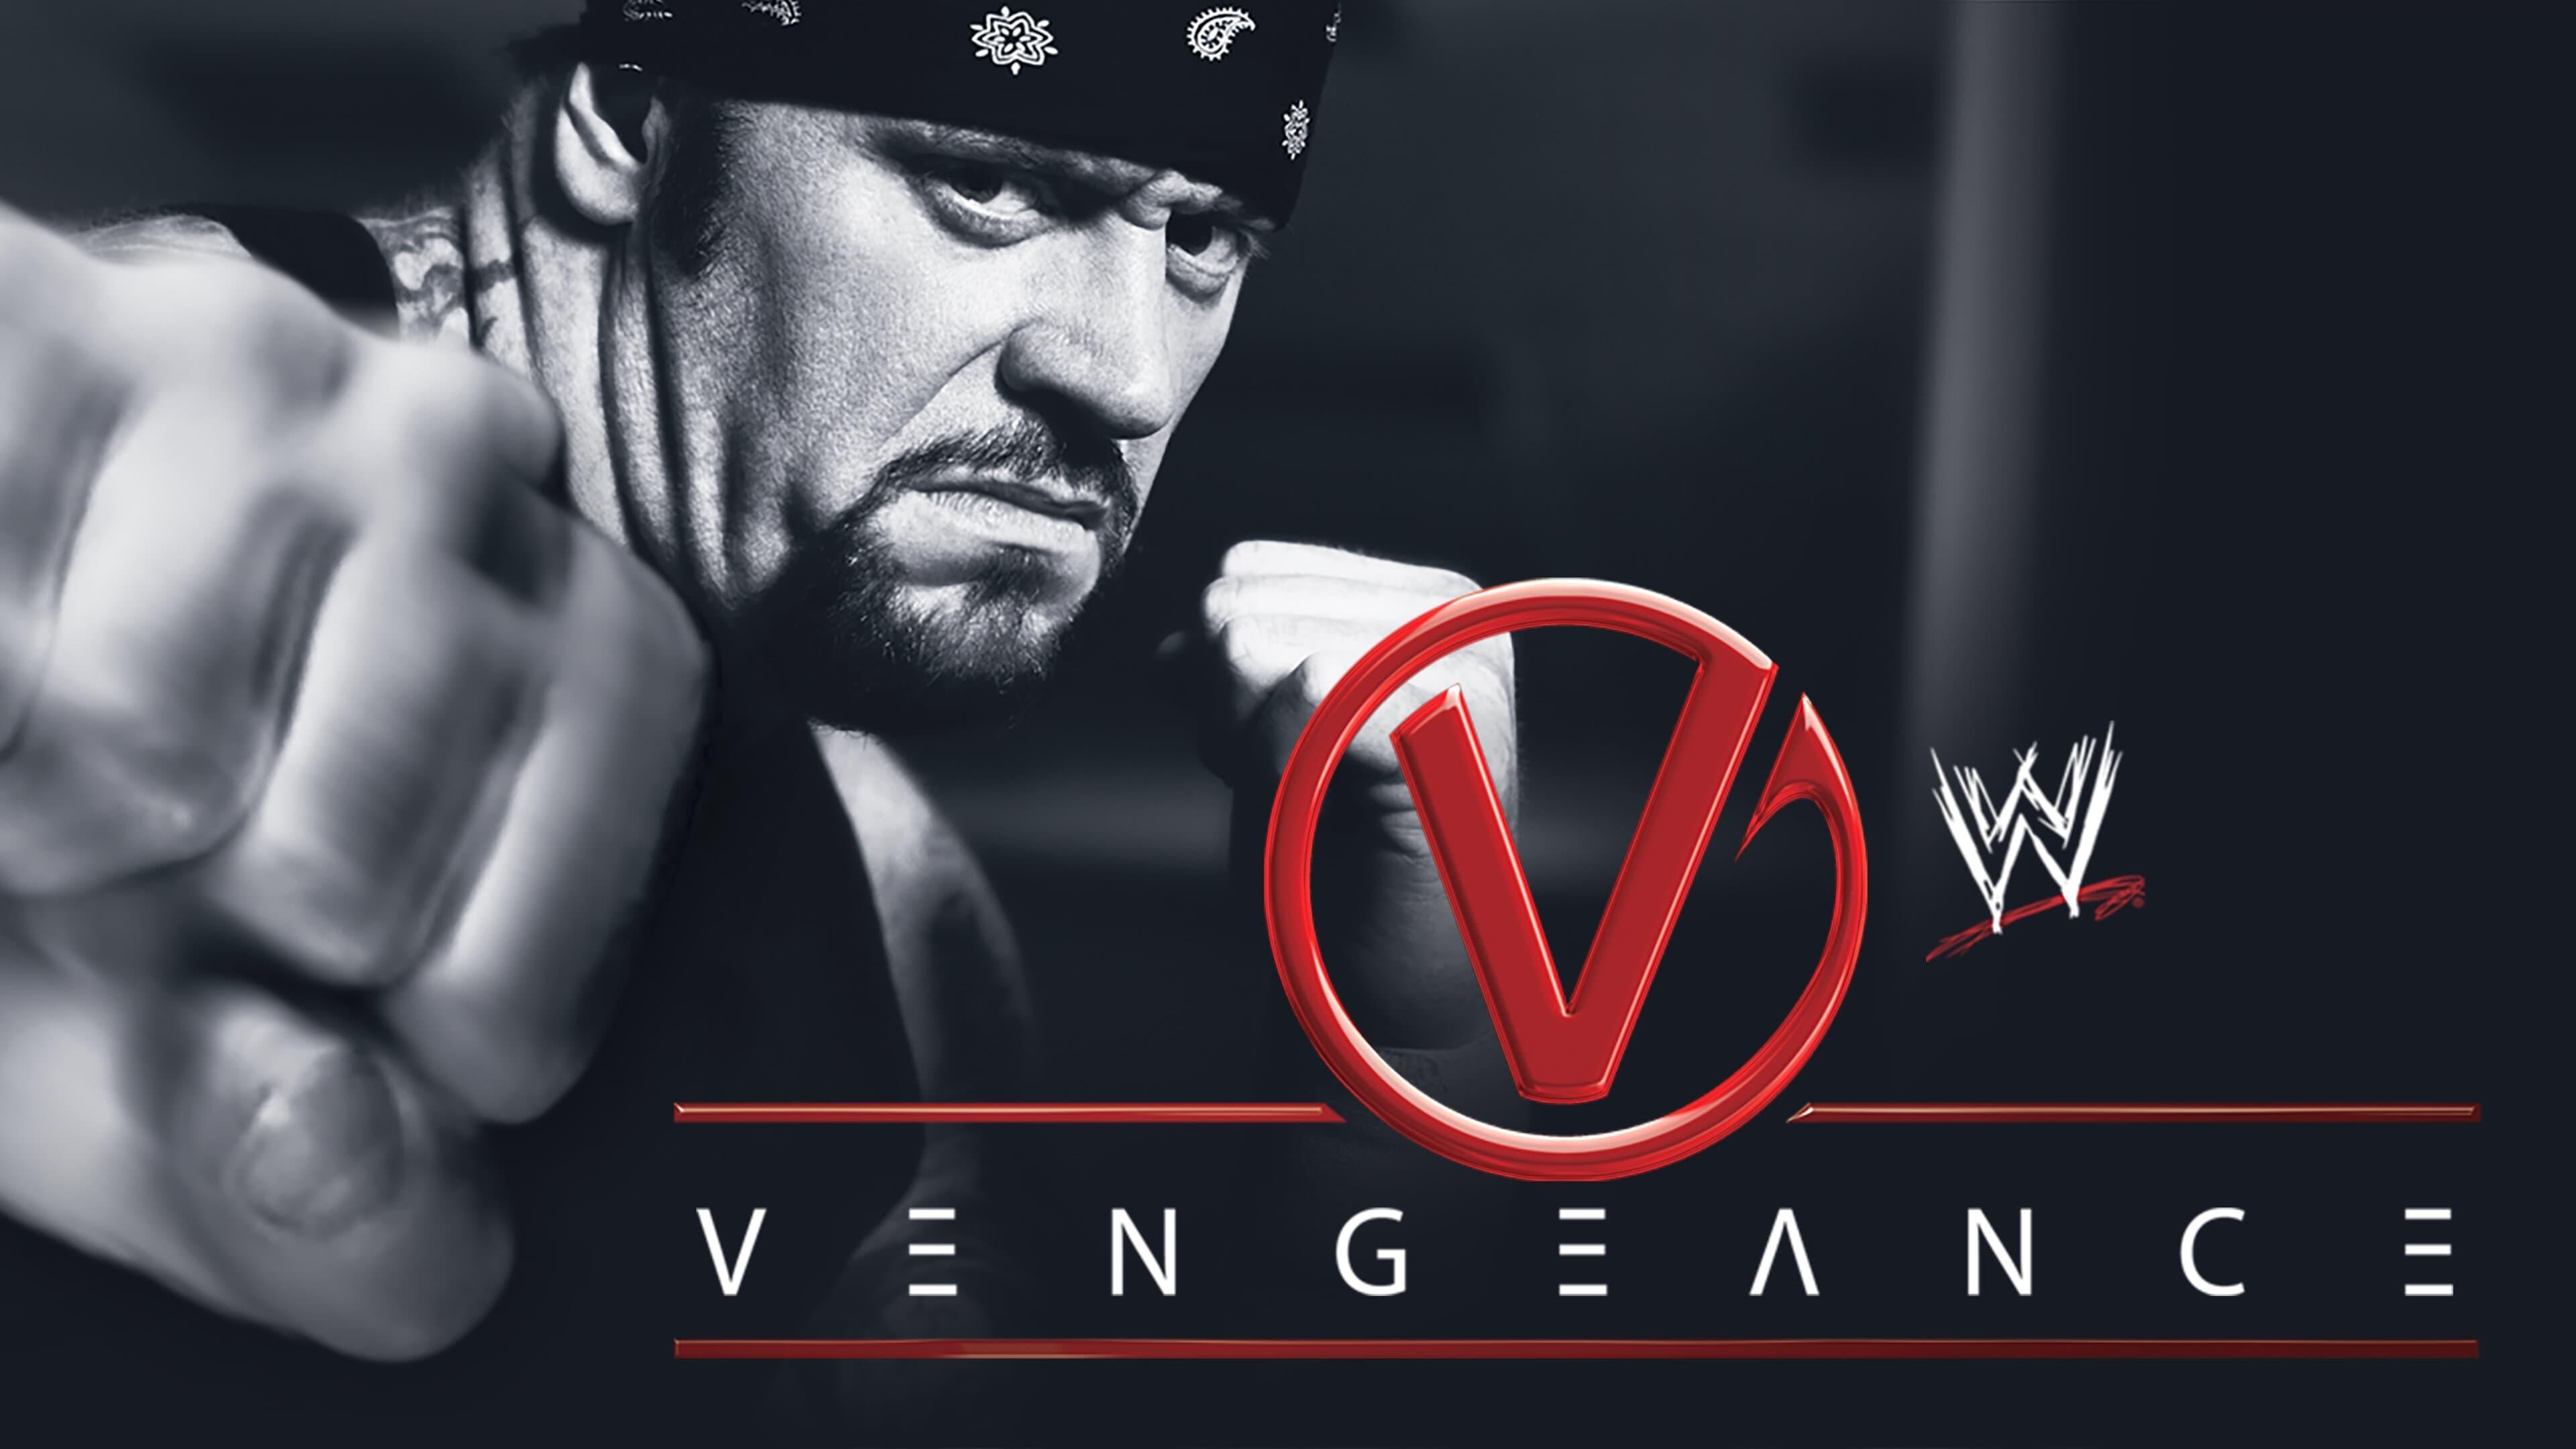 WWE Vengeance 2003 backdrop